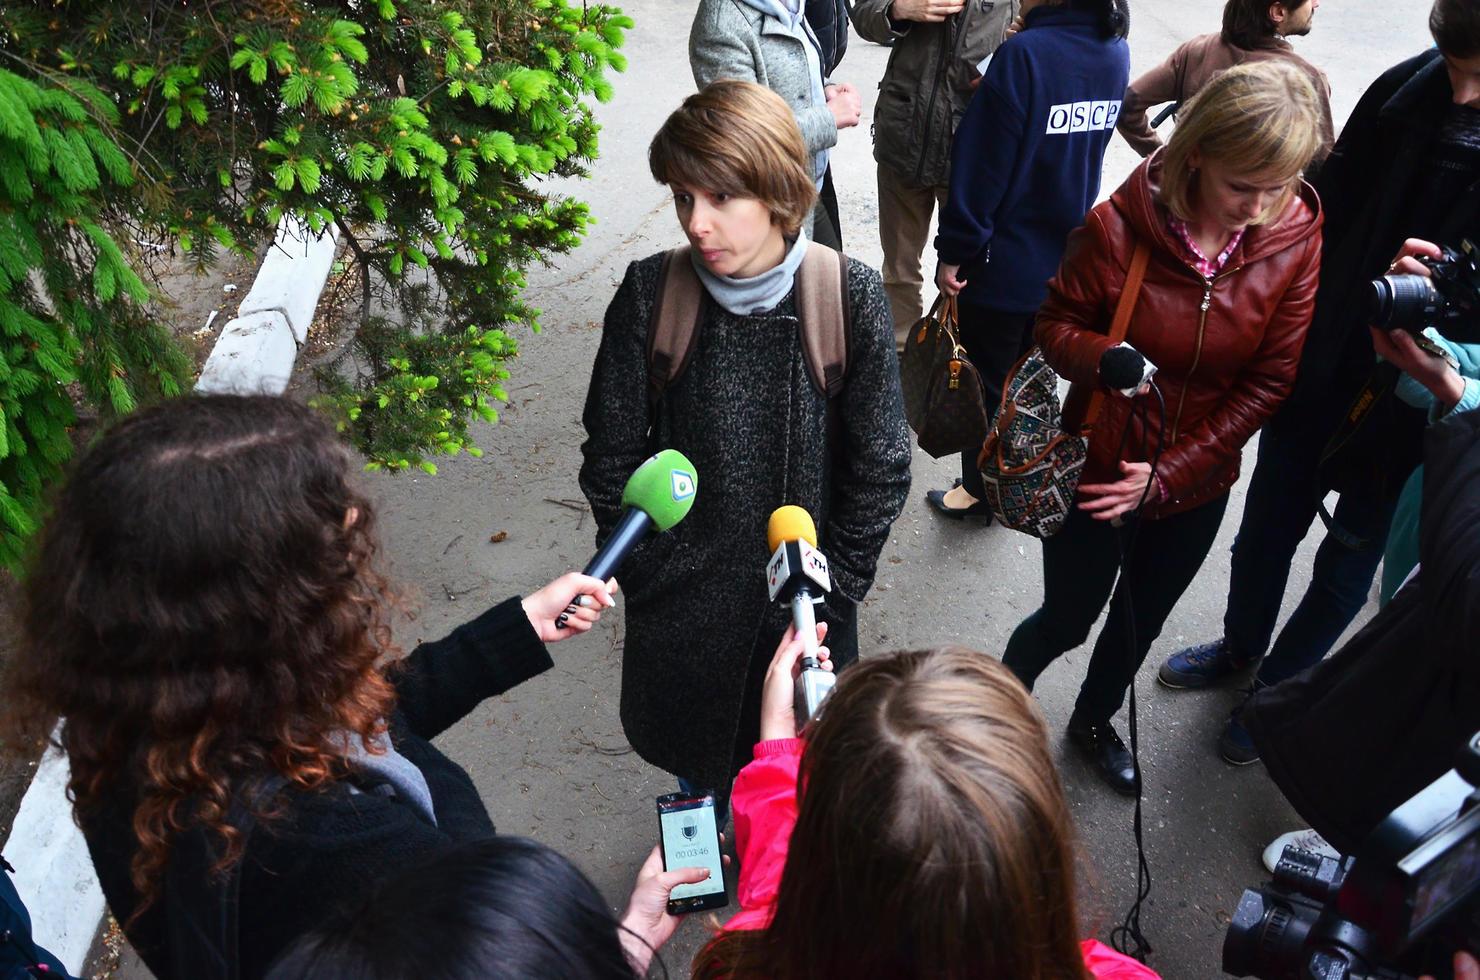 Kharkov. Ucraina - Maggio 17, 2022 partecipanti di il primo lgbt azione nel charkov dare interviste di un inaspettato attacco e rottura di il evento foto